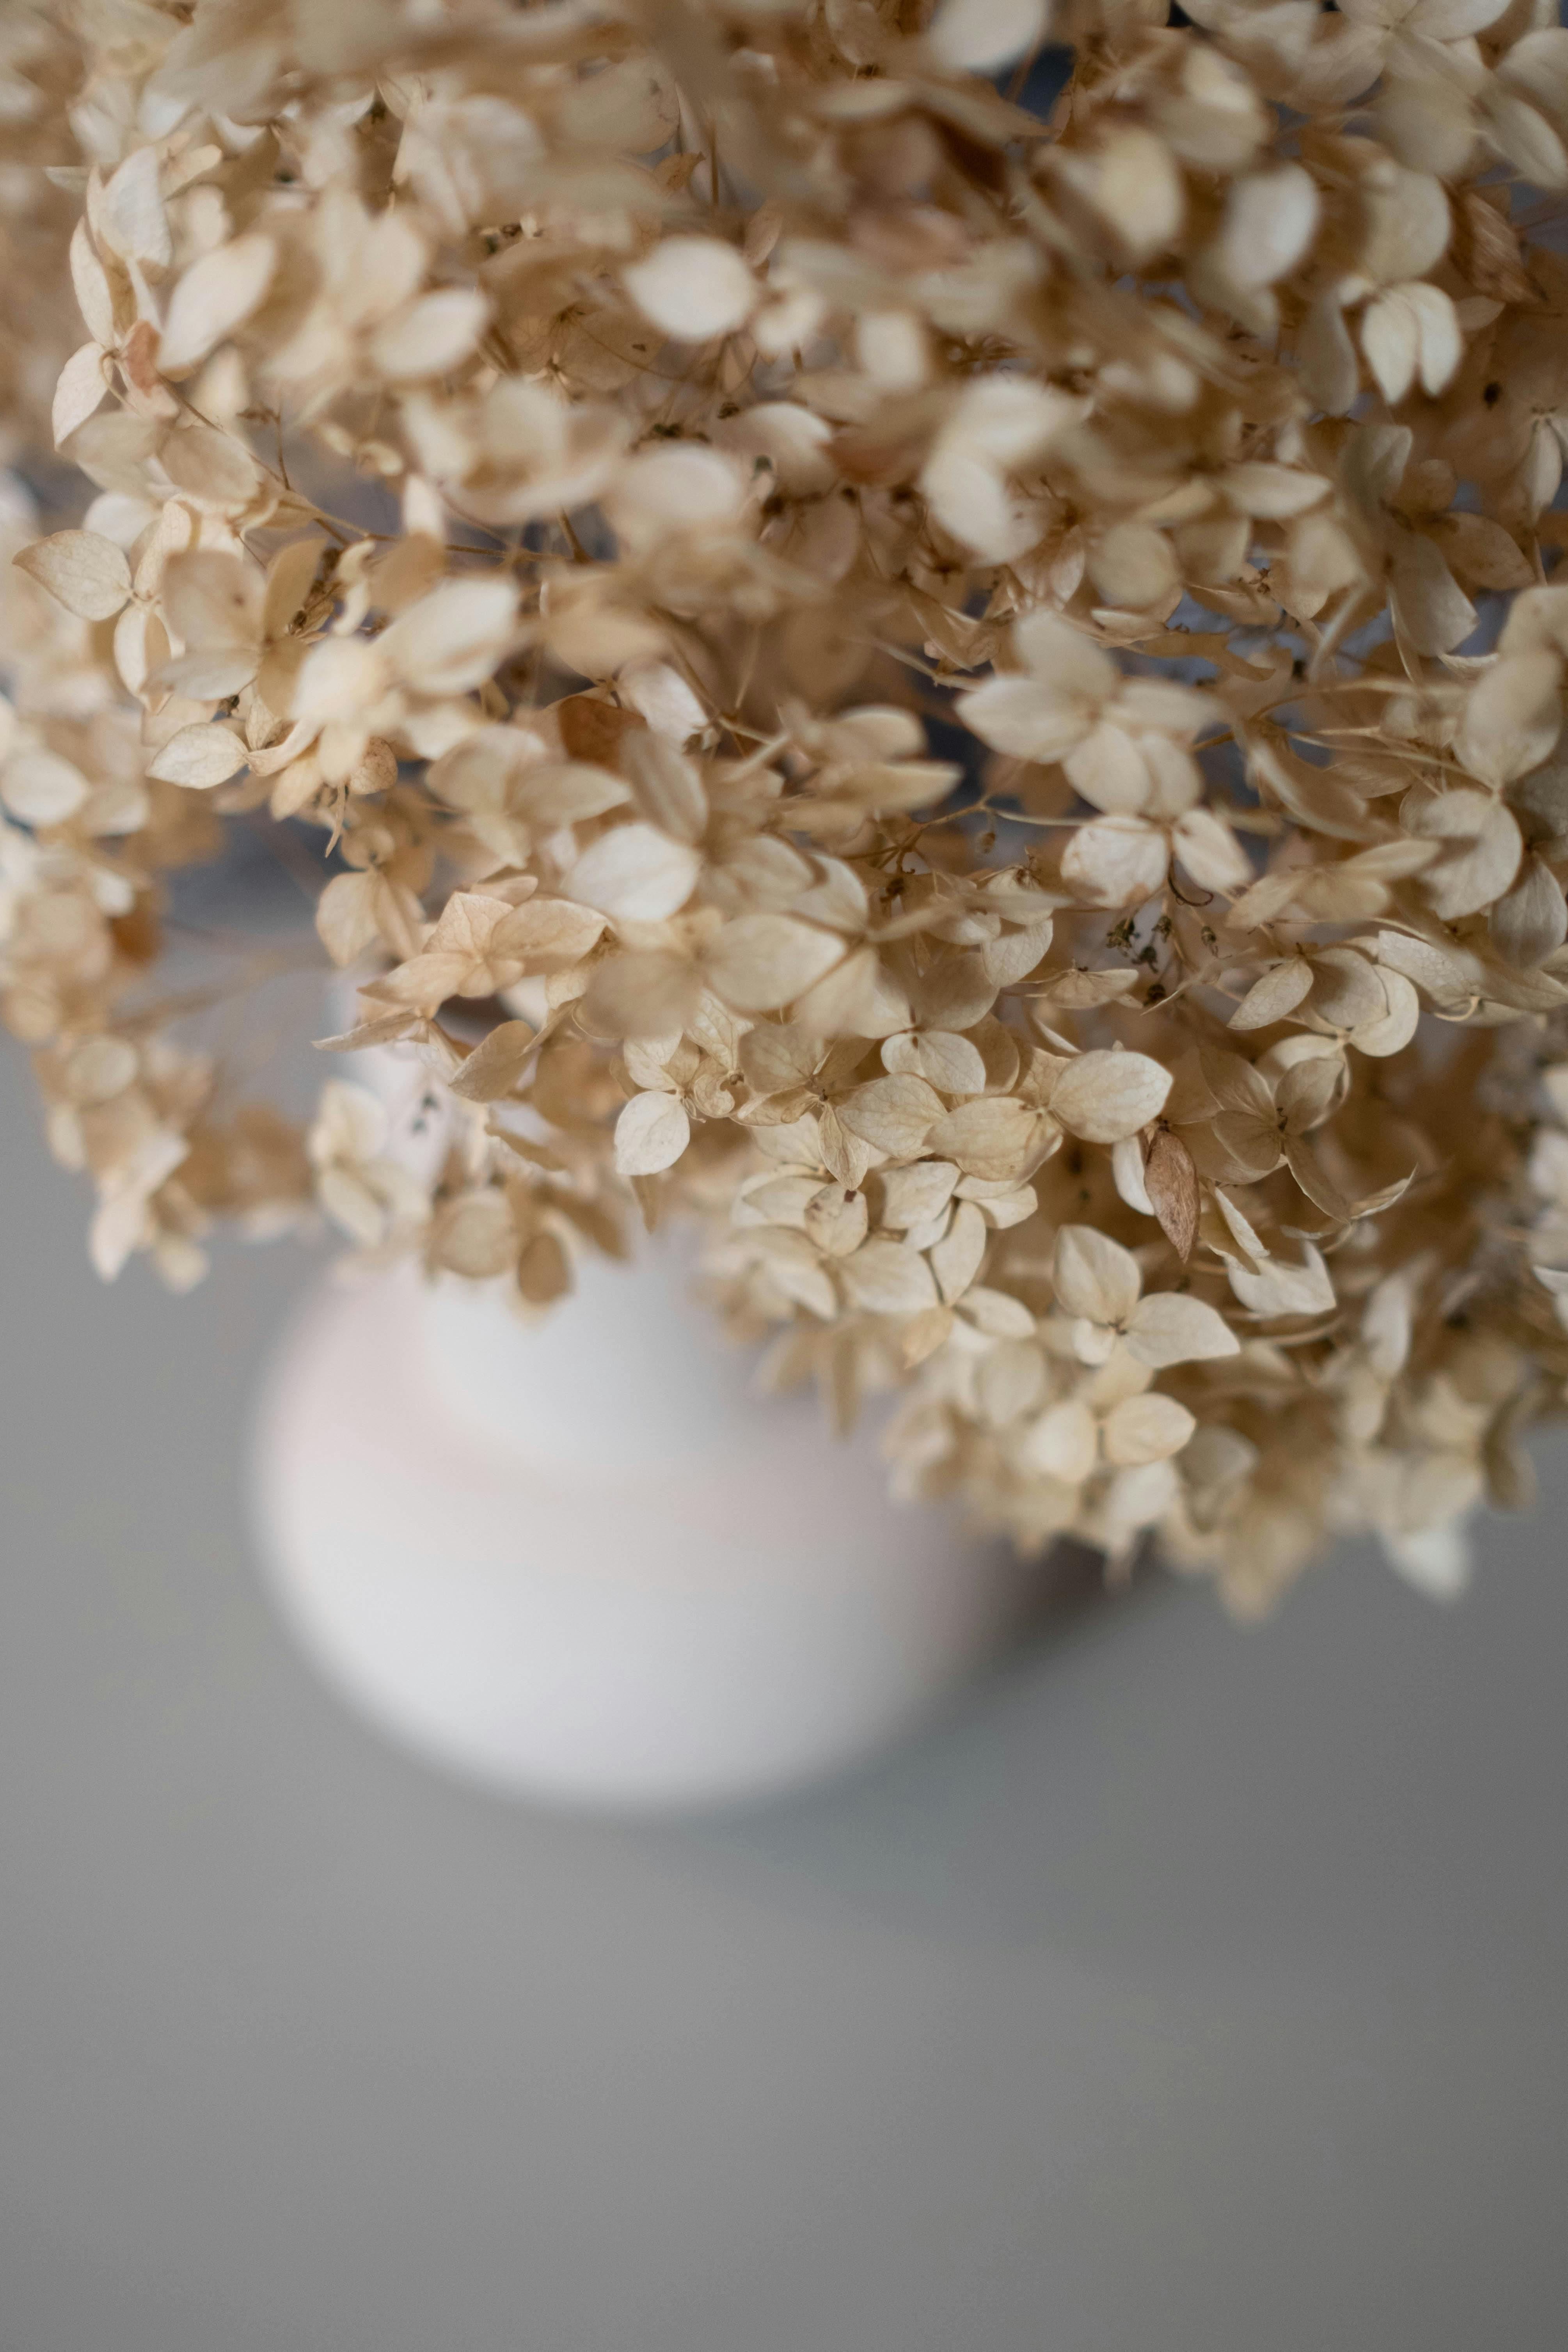 Dried hydrangeas là một trong những loại hoa khô được yêu thích nhất trên thế giới. Với sắc tím đậm, chúng mang đến một vẻ đẹp rất riêng và đầy phong cách. Xem những hình ảnh hoa khô cẩm tú cầu để hiểu rõ hơn về sự thanh lịch và tinh tế của loài hoa này.